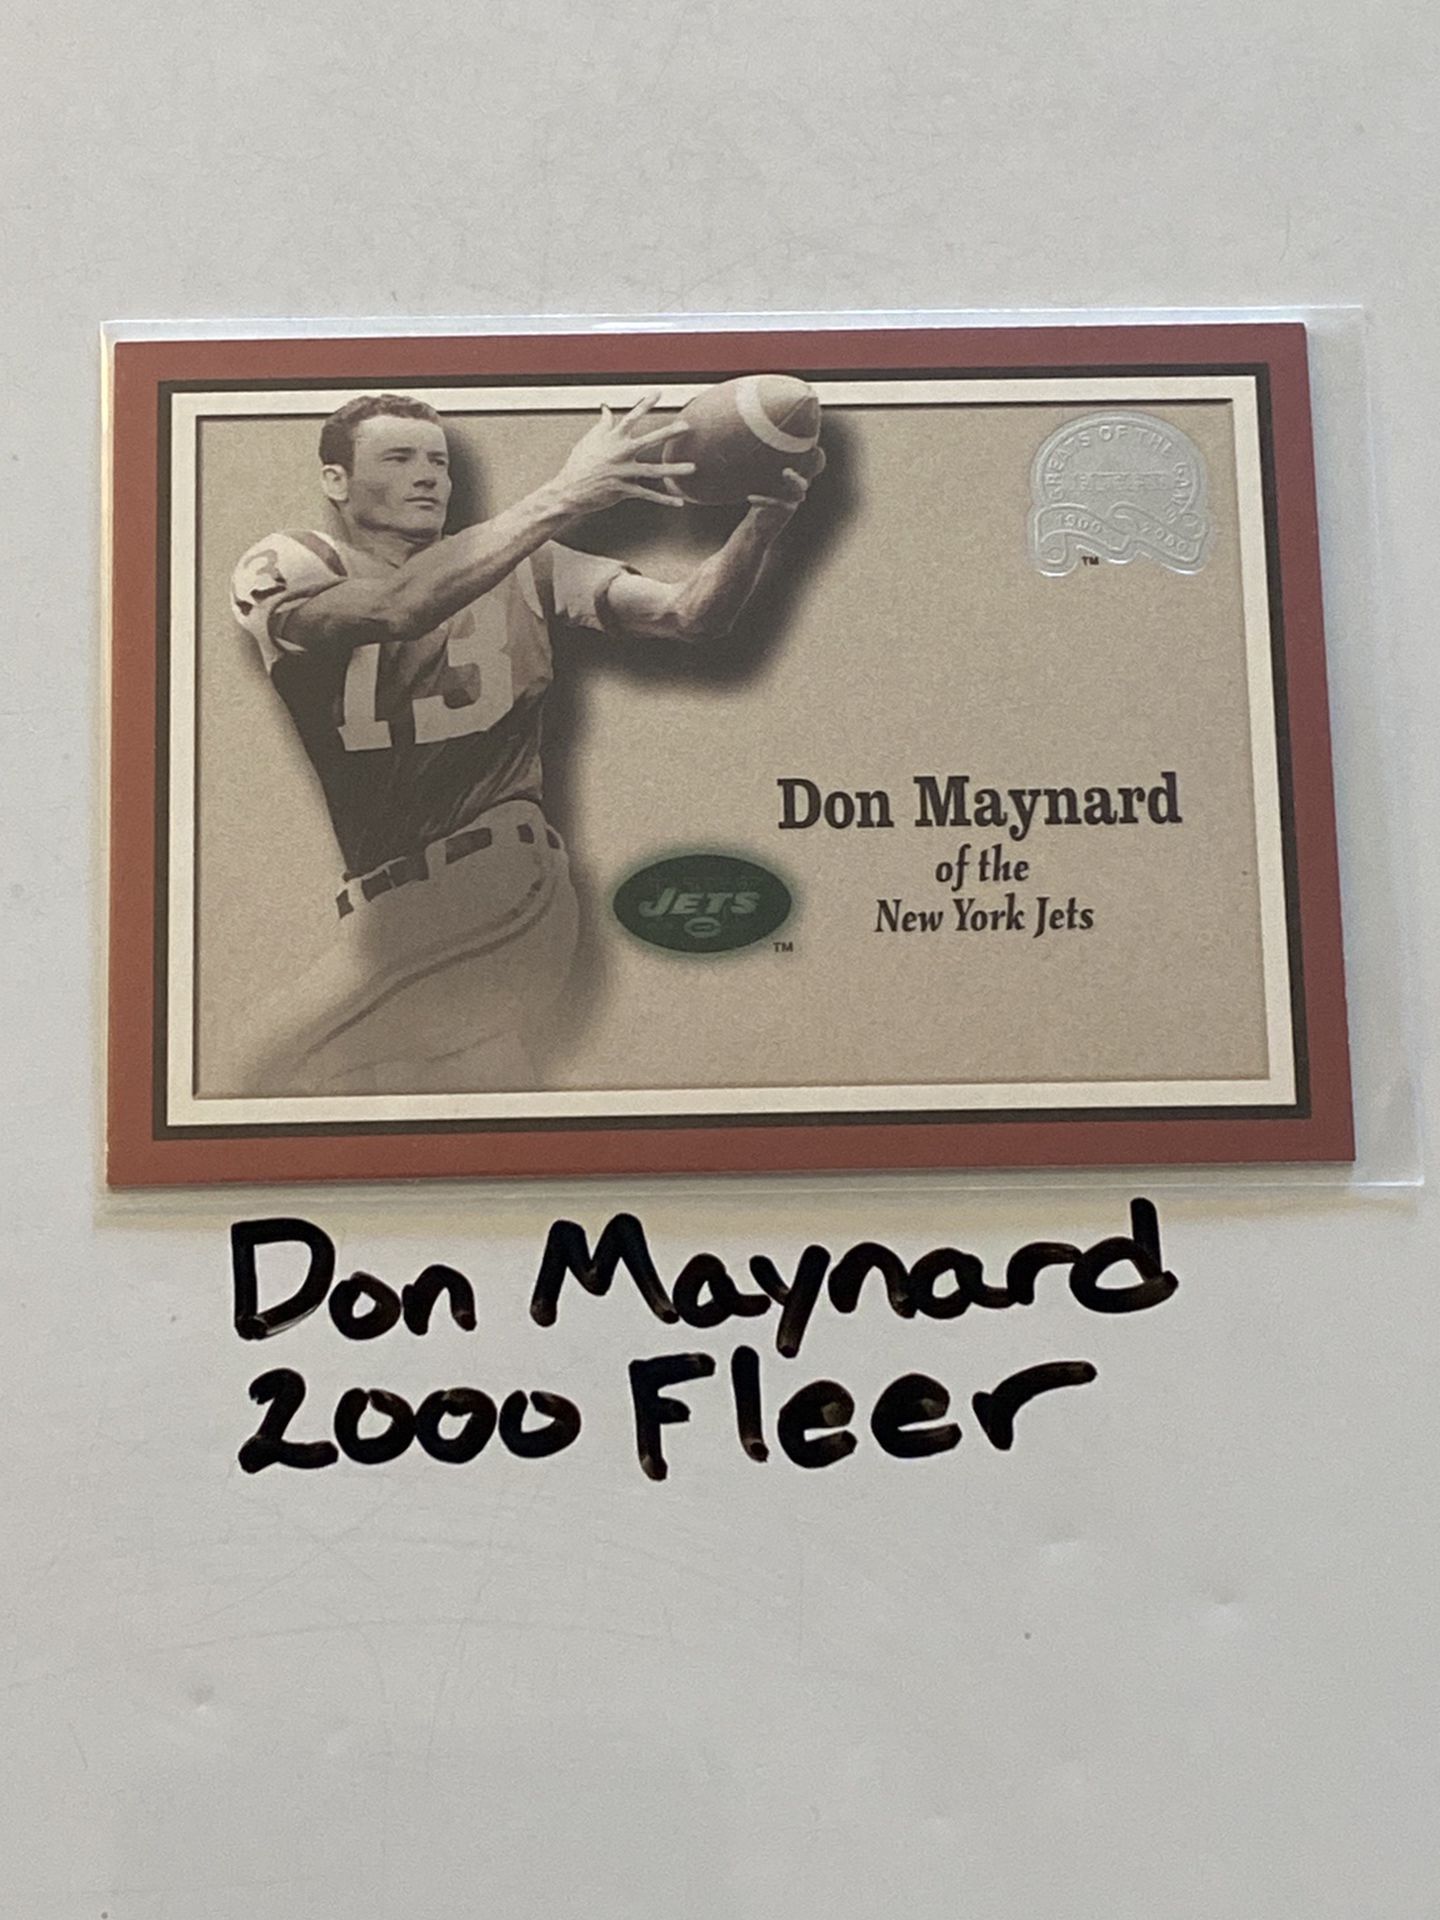 Don Maynard New York Jets Hall of Fame WR 2000 Fleer Base Card.